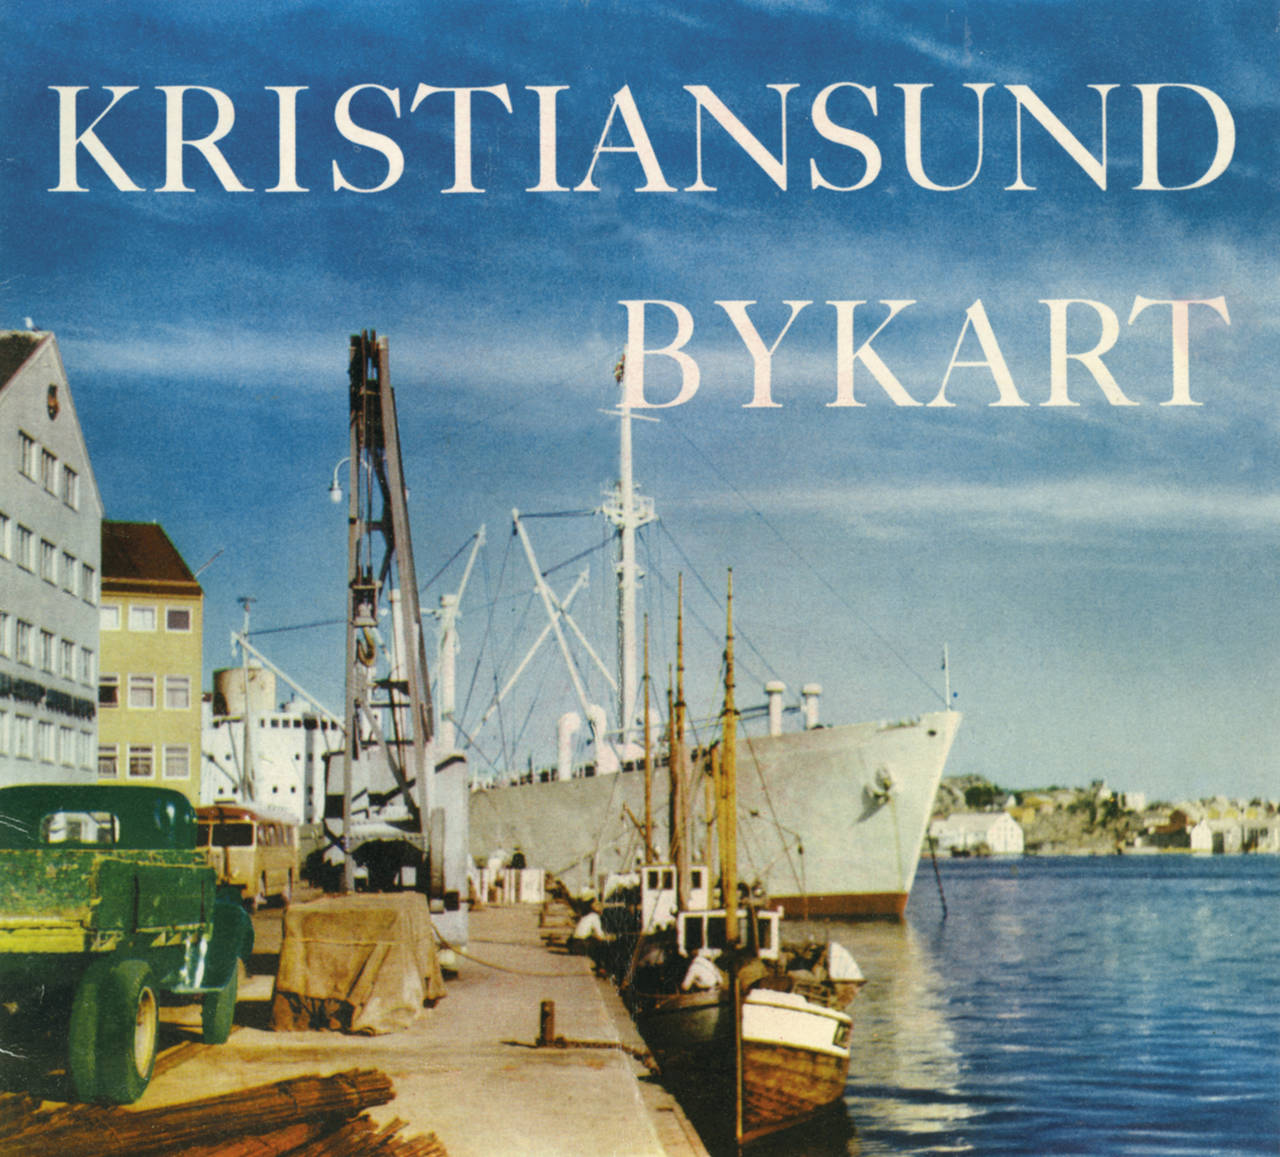 Bykart for Kristiansund anno 1956